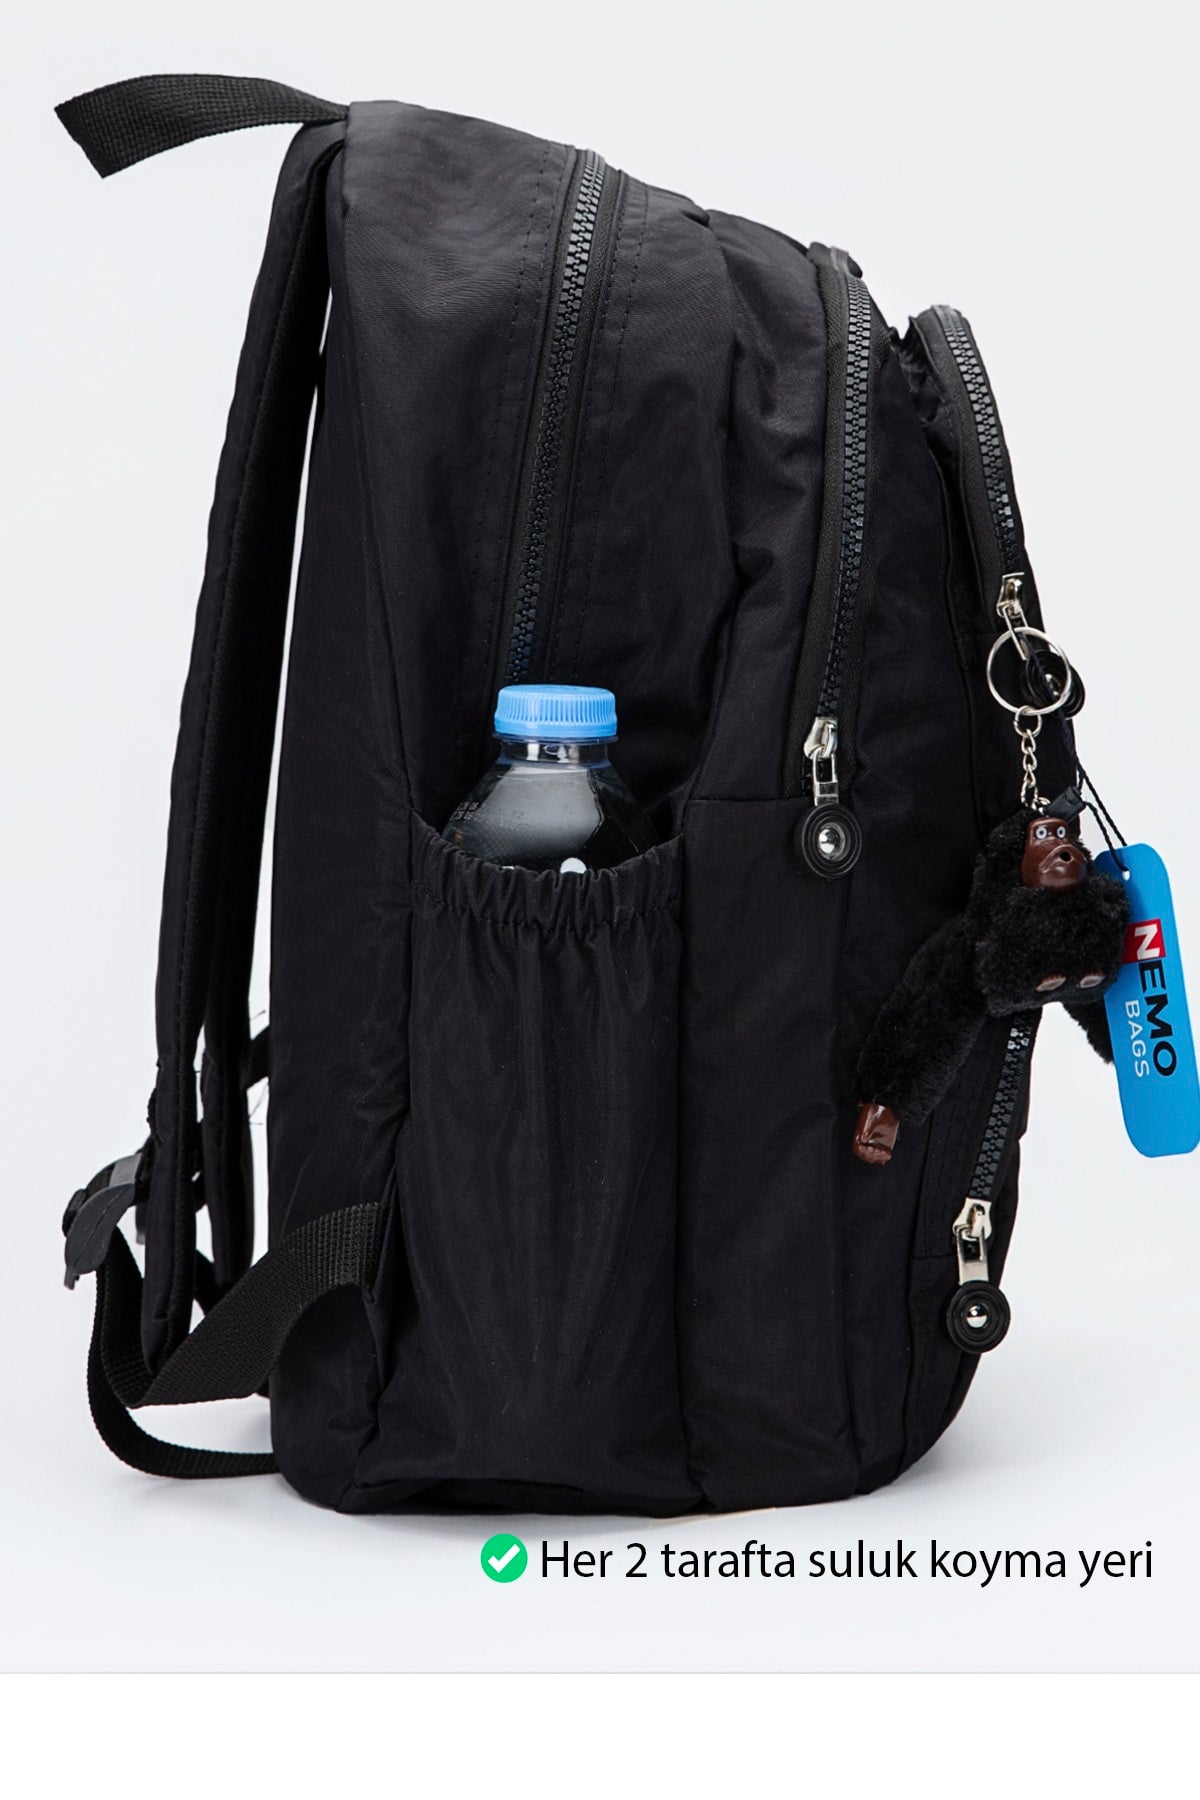 Dark Black Crinkle Nemobags Unisex Waterproof Black Clinker Backpack Laptop School Bag